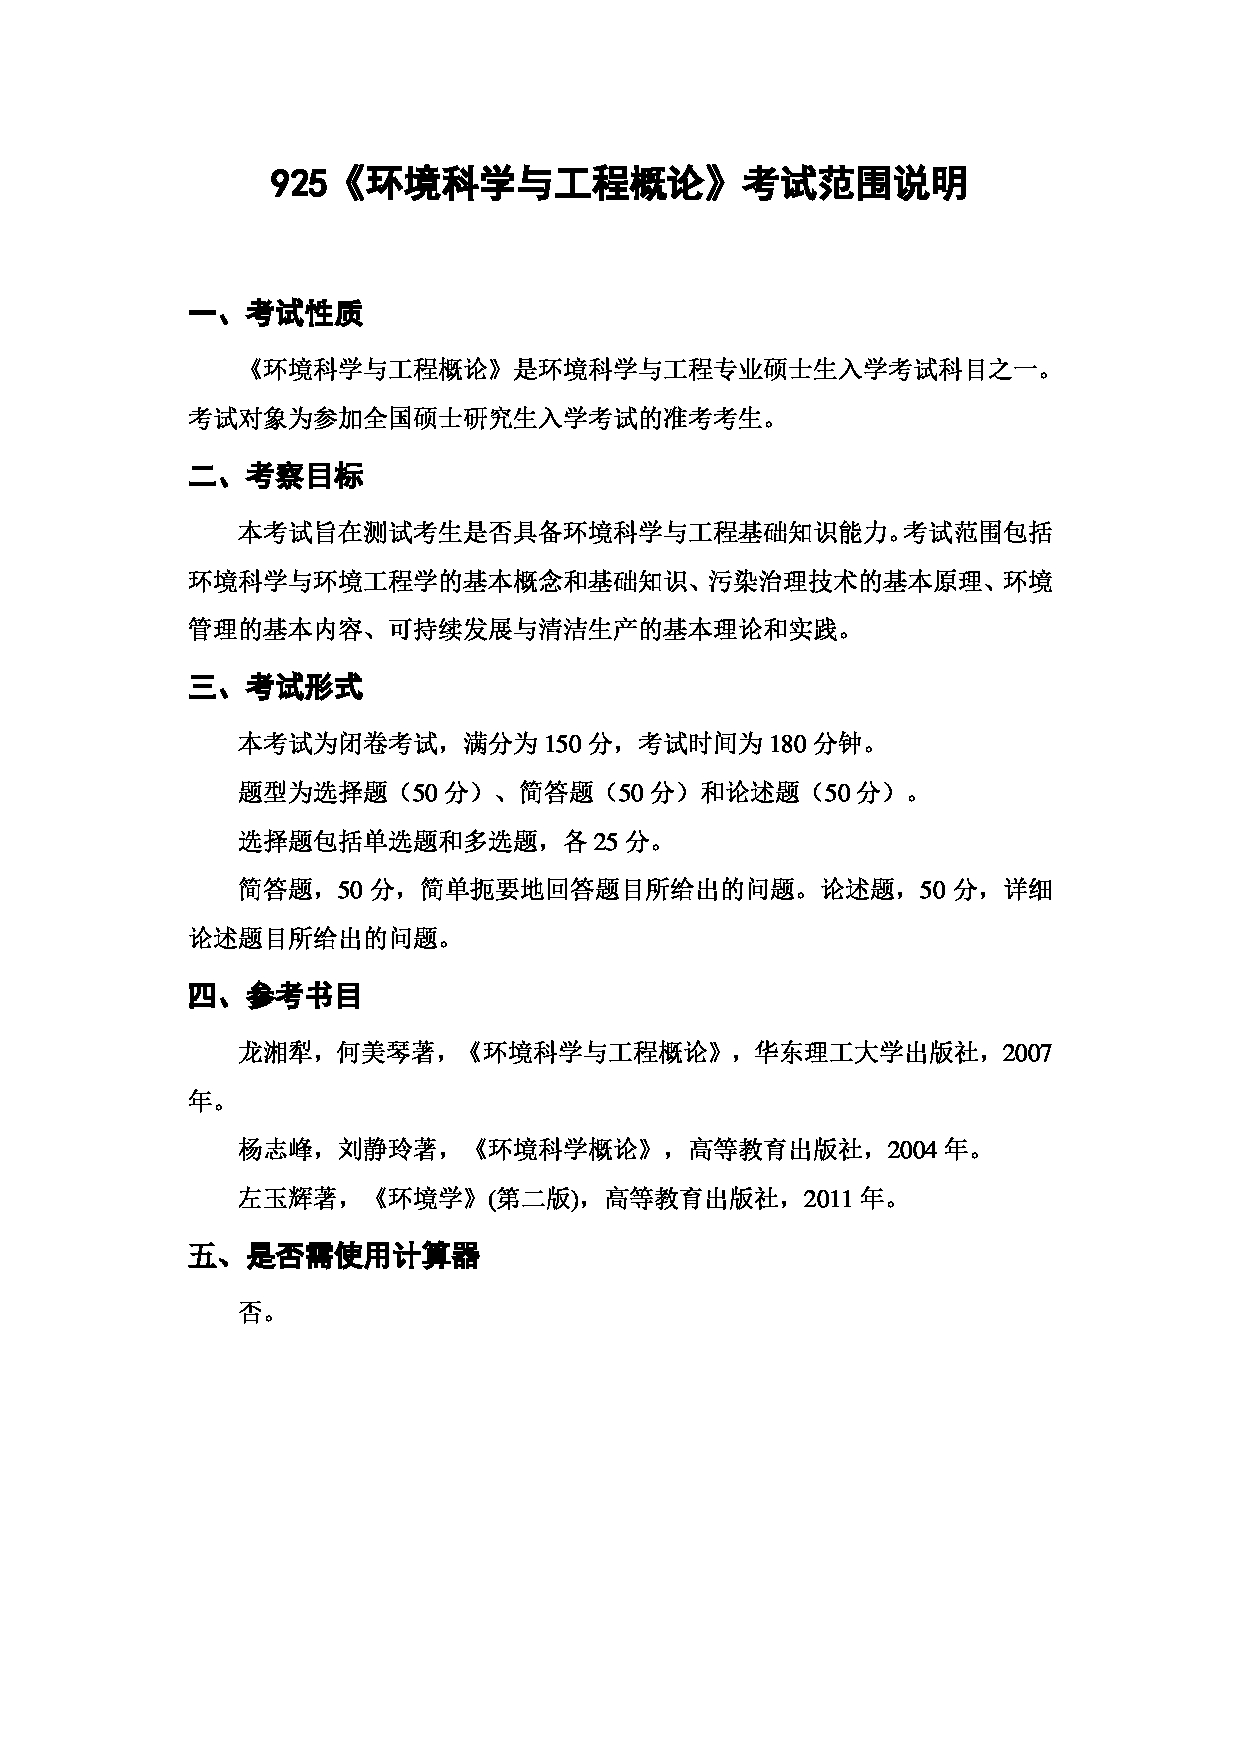 上海海洋大学2023年考研自命题科目 925《环境科学与工程概论》 考试范围第1页